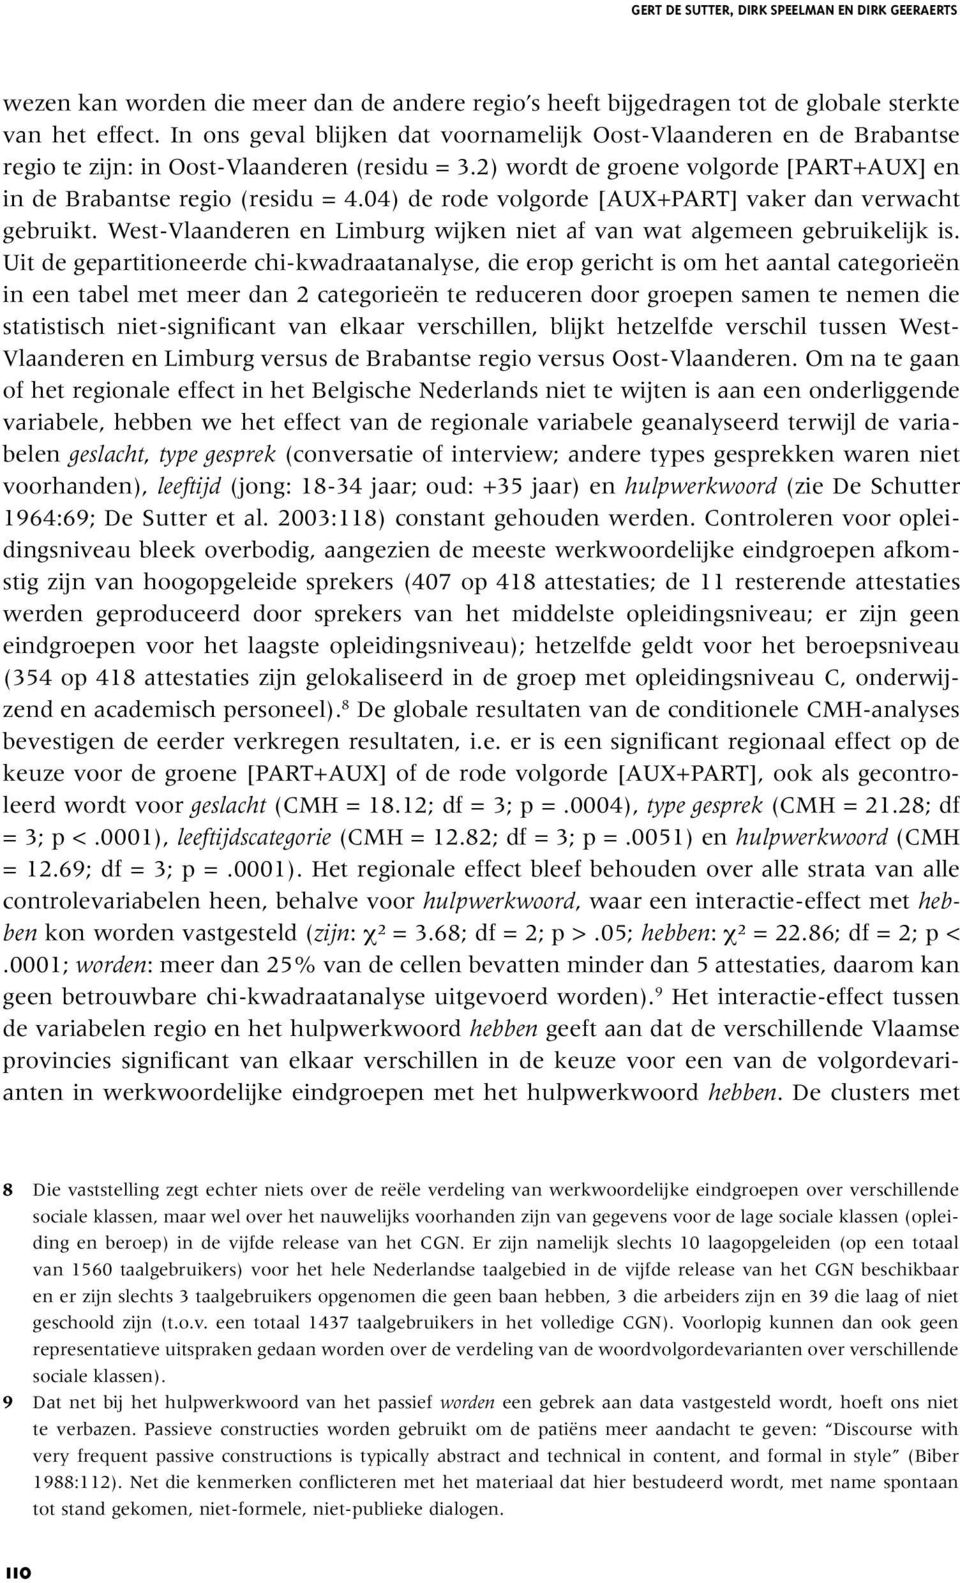 04) de rode volgorde [AUX+PART] vaker dan verwacht gebruikt. West-Vlaanderen en Limburg wijken niet af van wat algemeen gebruikelijk is.